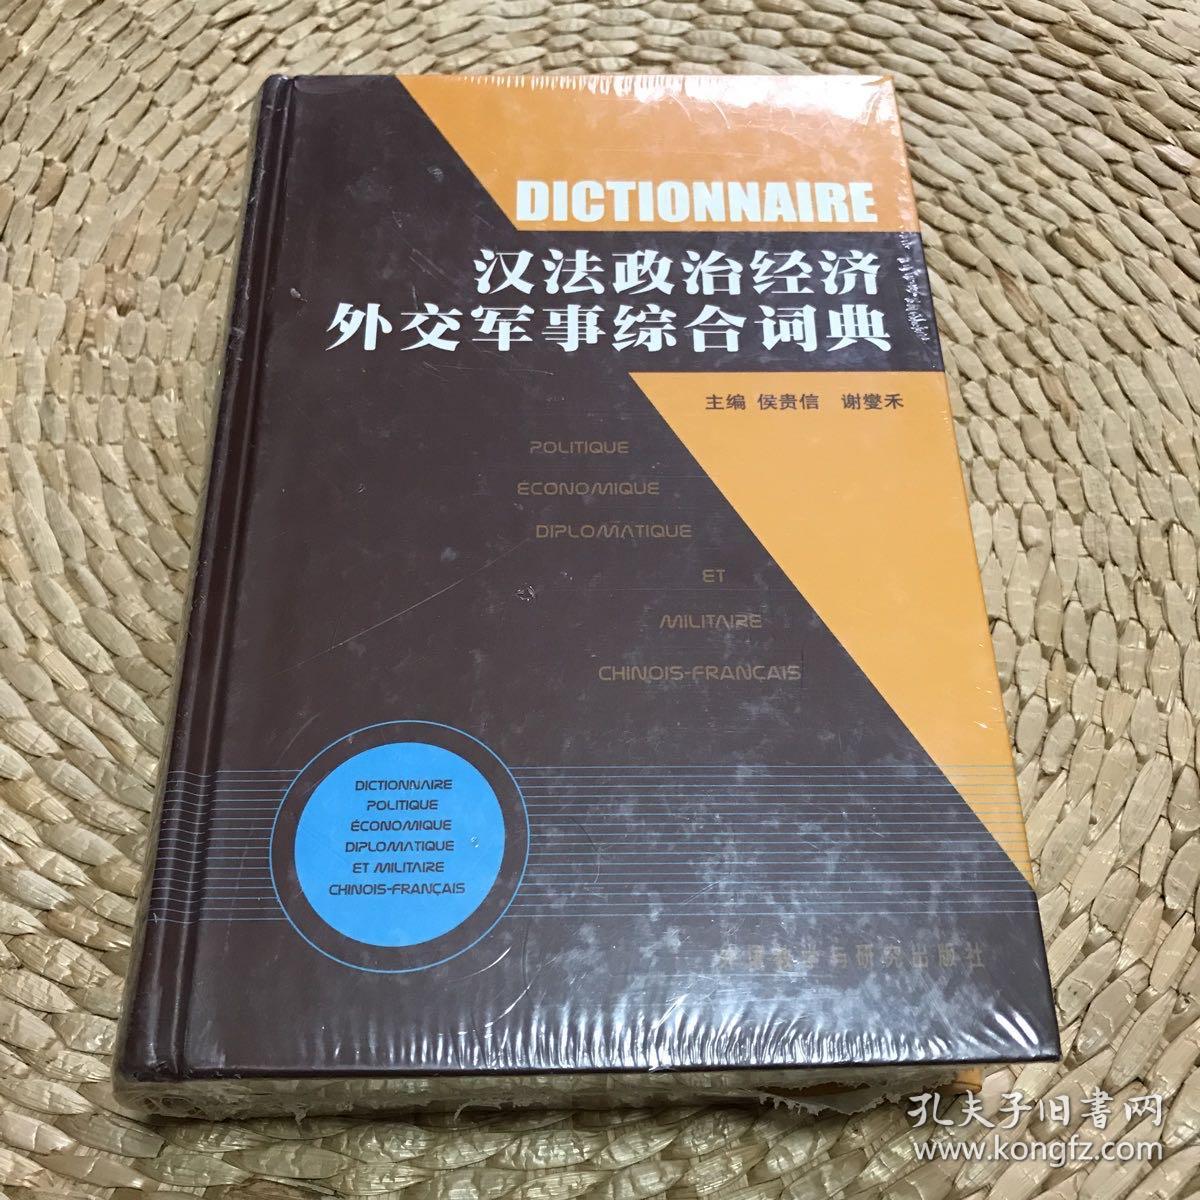 《汉法政治经济外交军事综合词典》